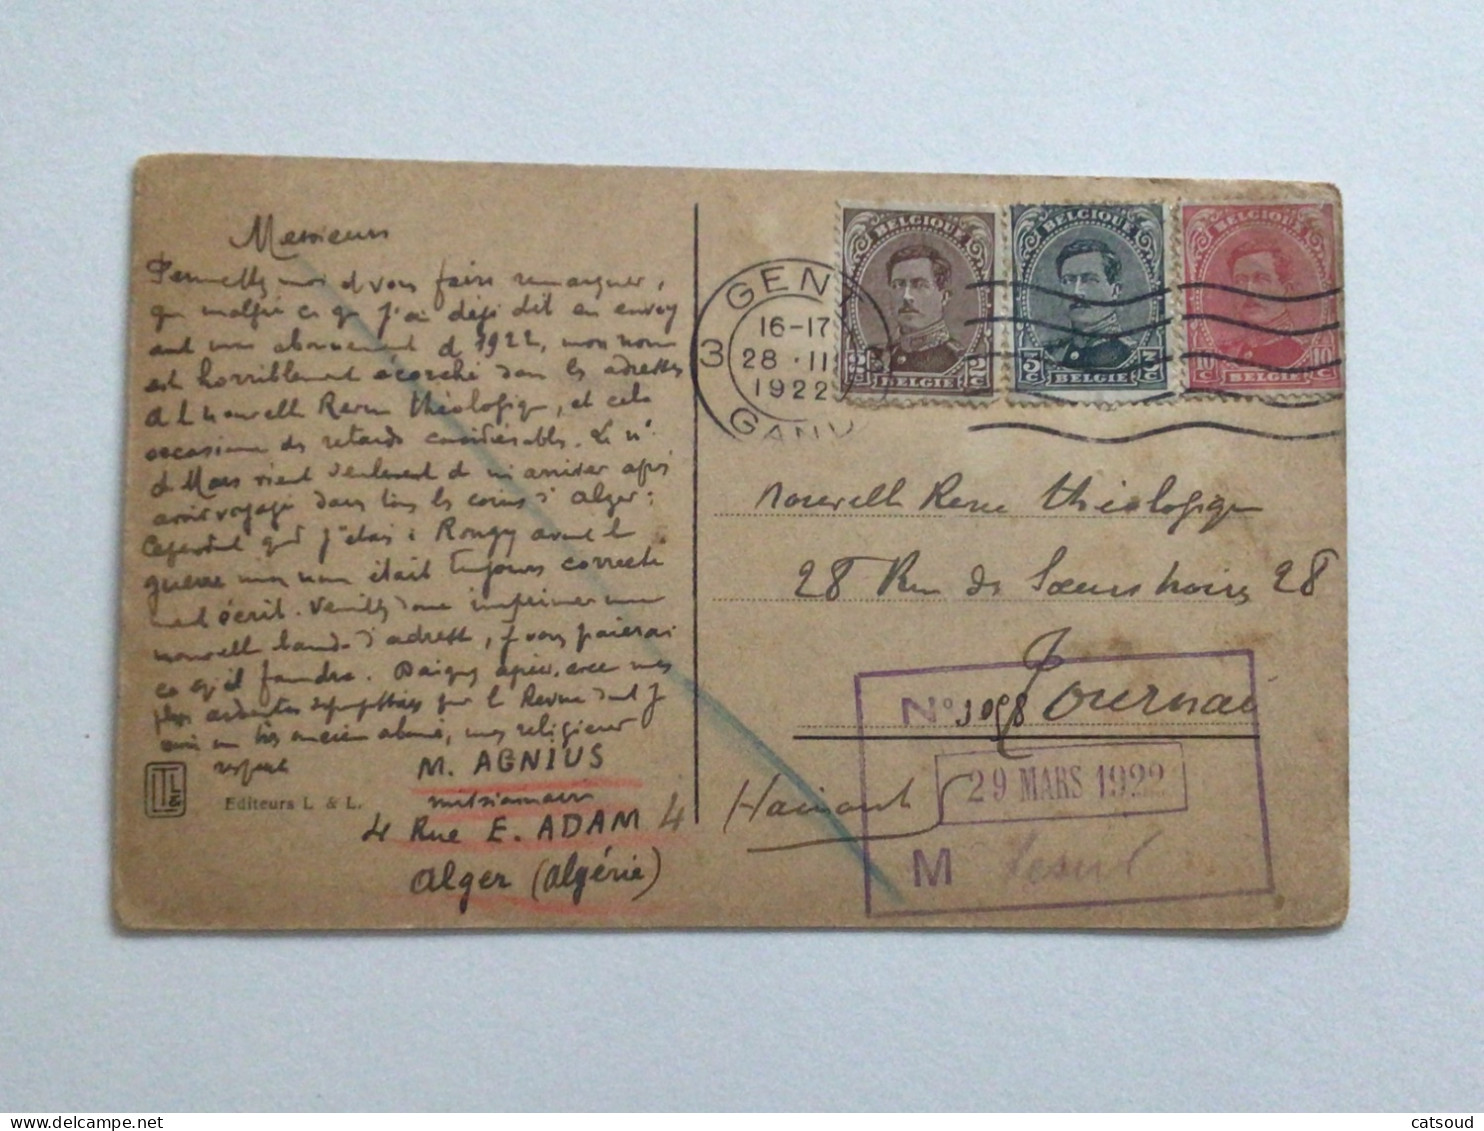 Carte Postale Ancienne (1922) Rivière Dans L’oasis - Algerien